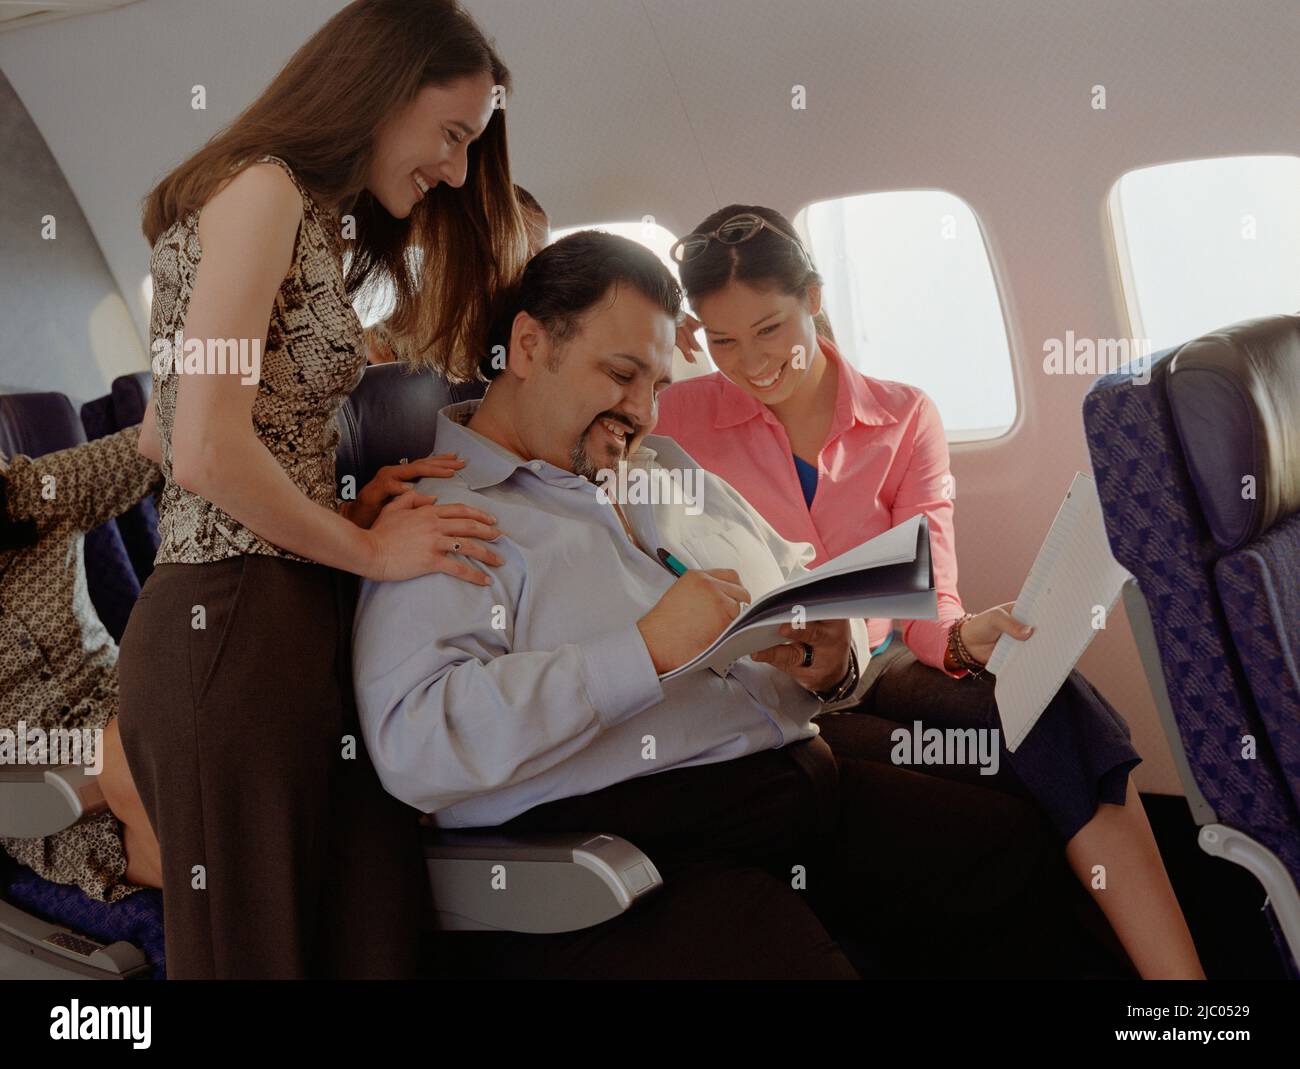 Reifer Mann immer weibliche Aufmerksamkeit auf Flugzeug Stockfoto